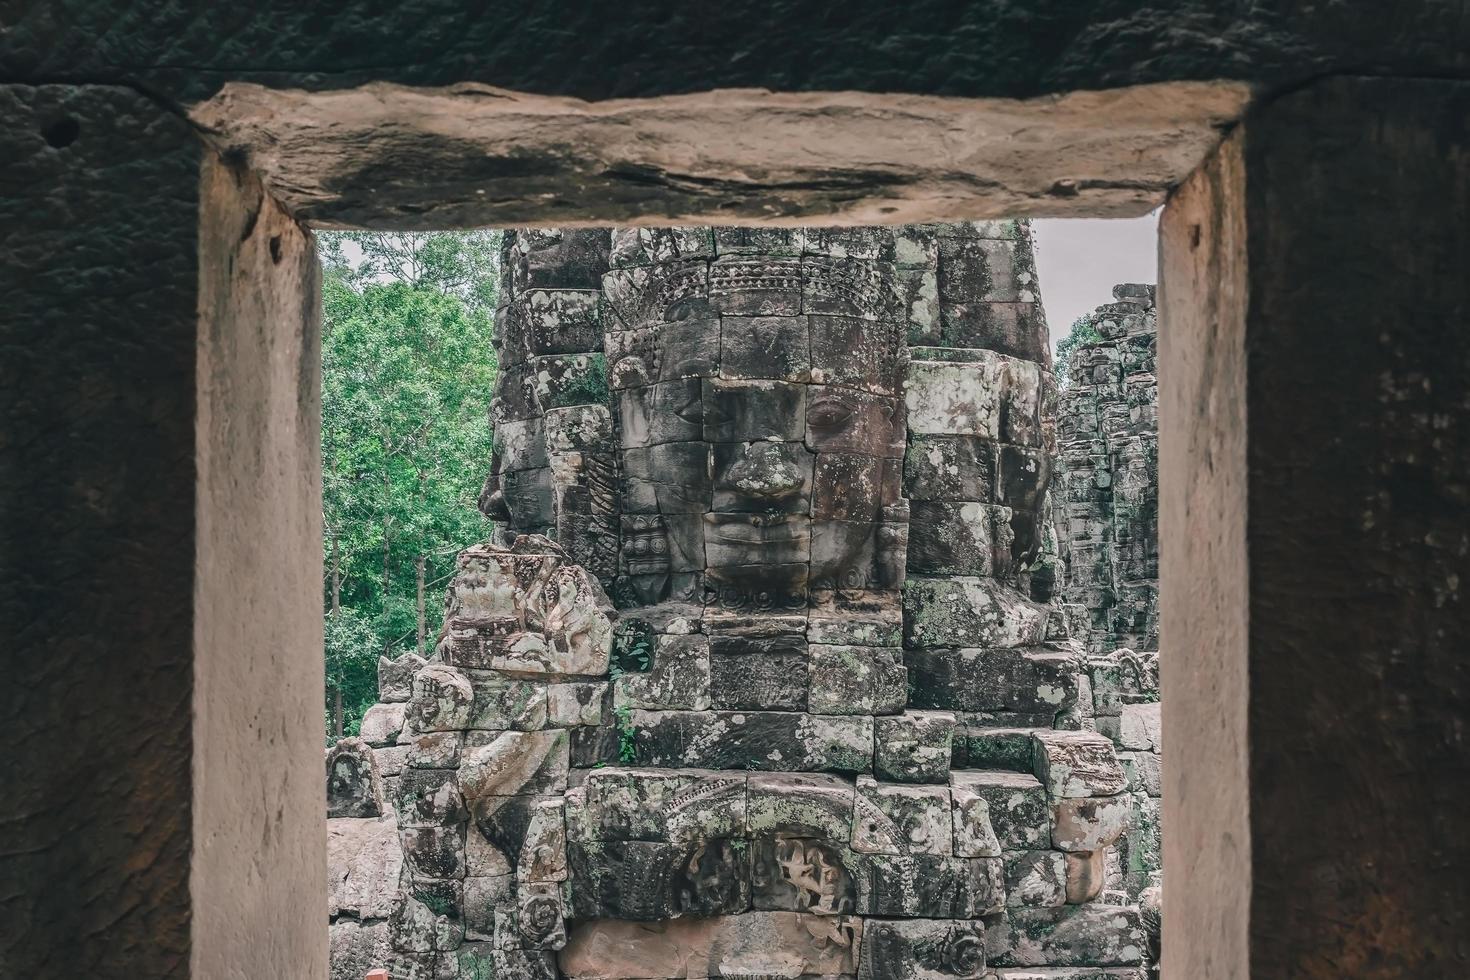 faces de pedra antigas no templo bayon, angkor wat, siam reap, camboja foto